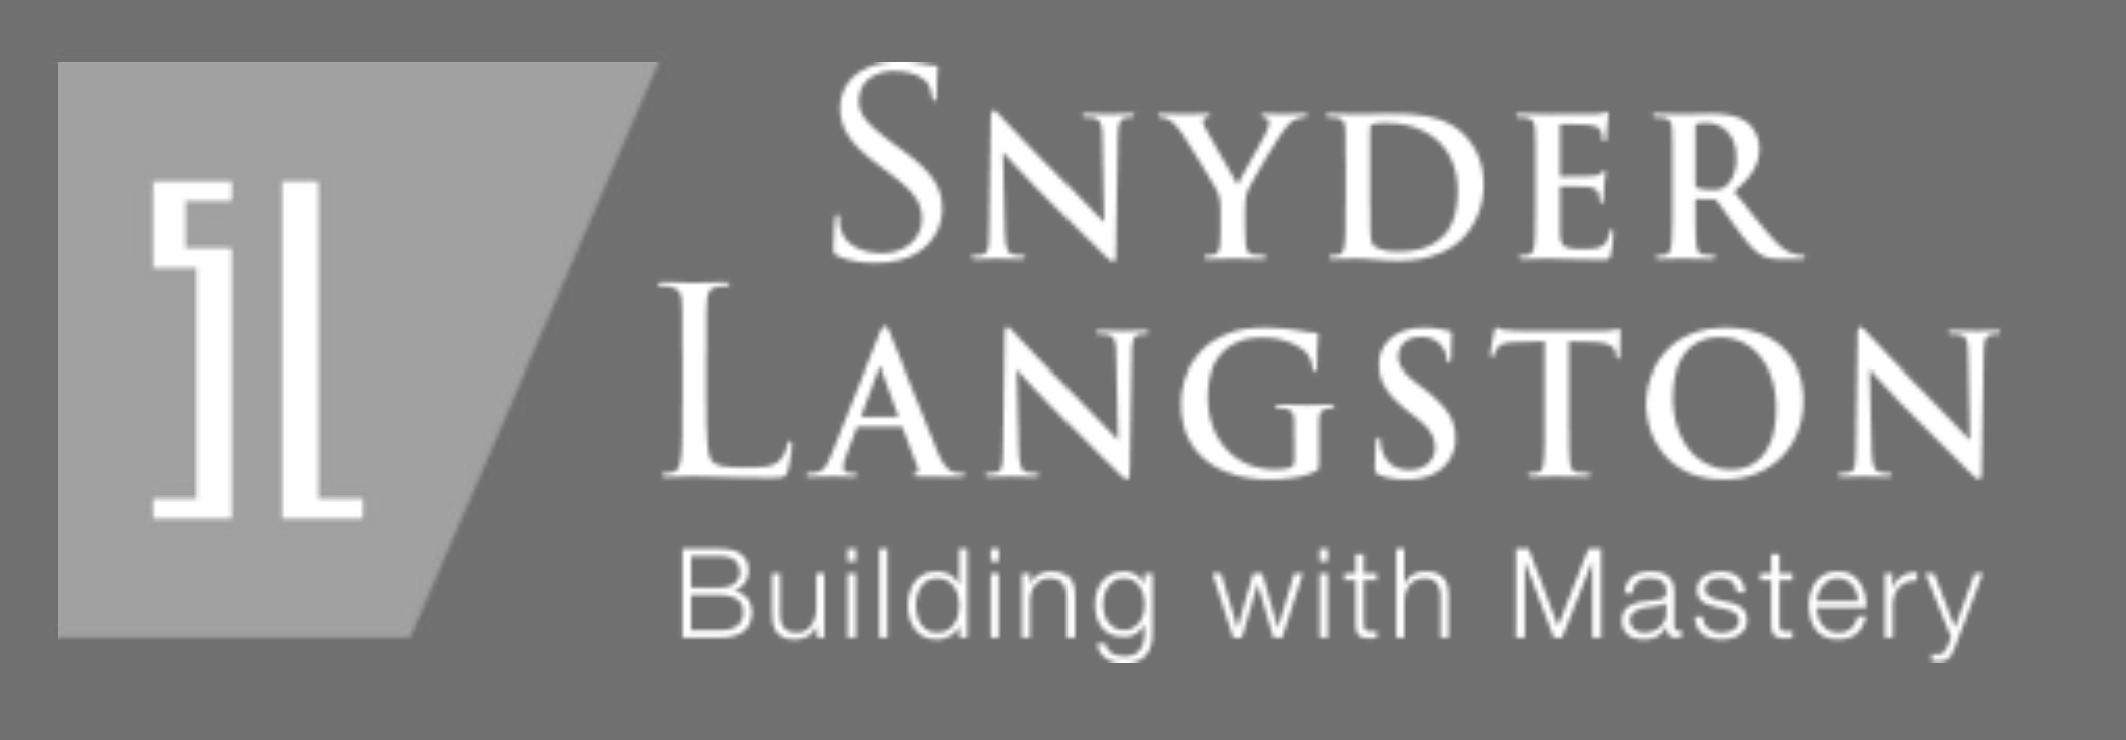 IND - Snyder Langston Logo 01.png